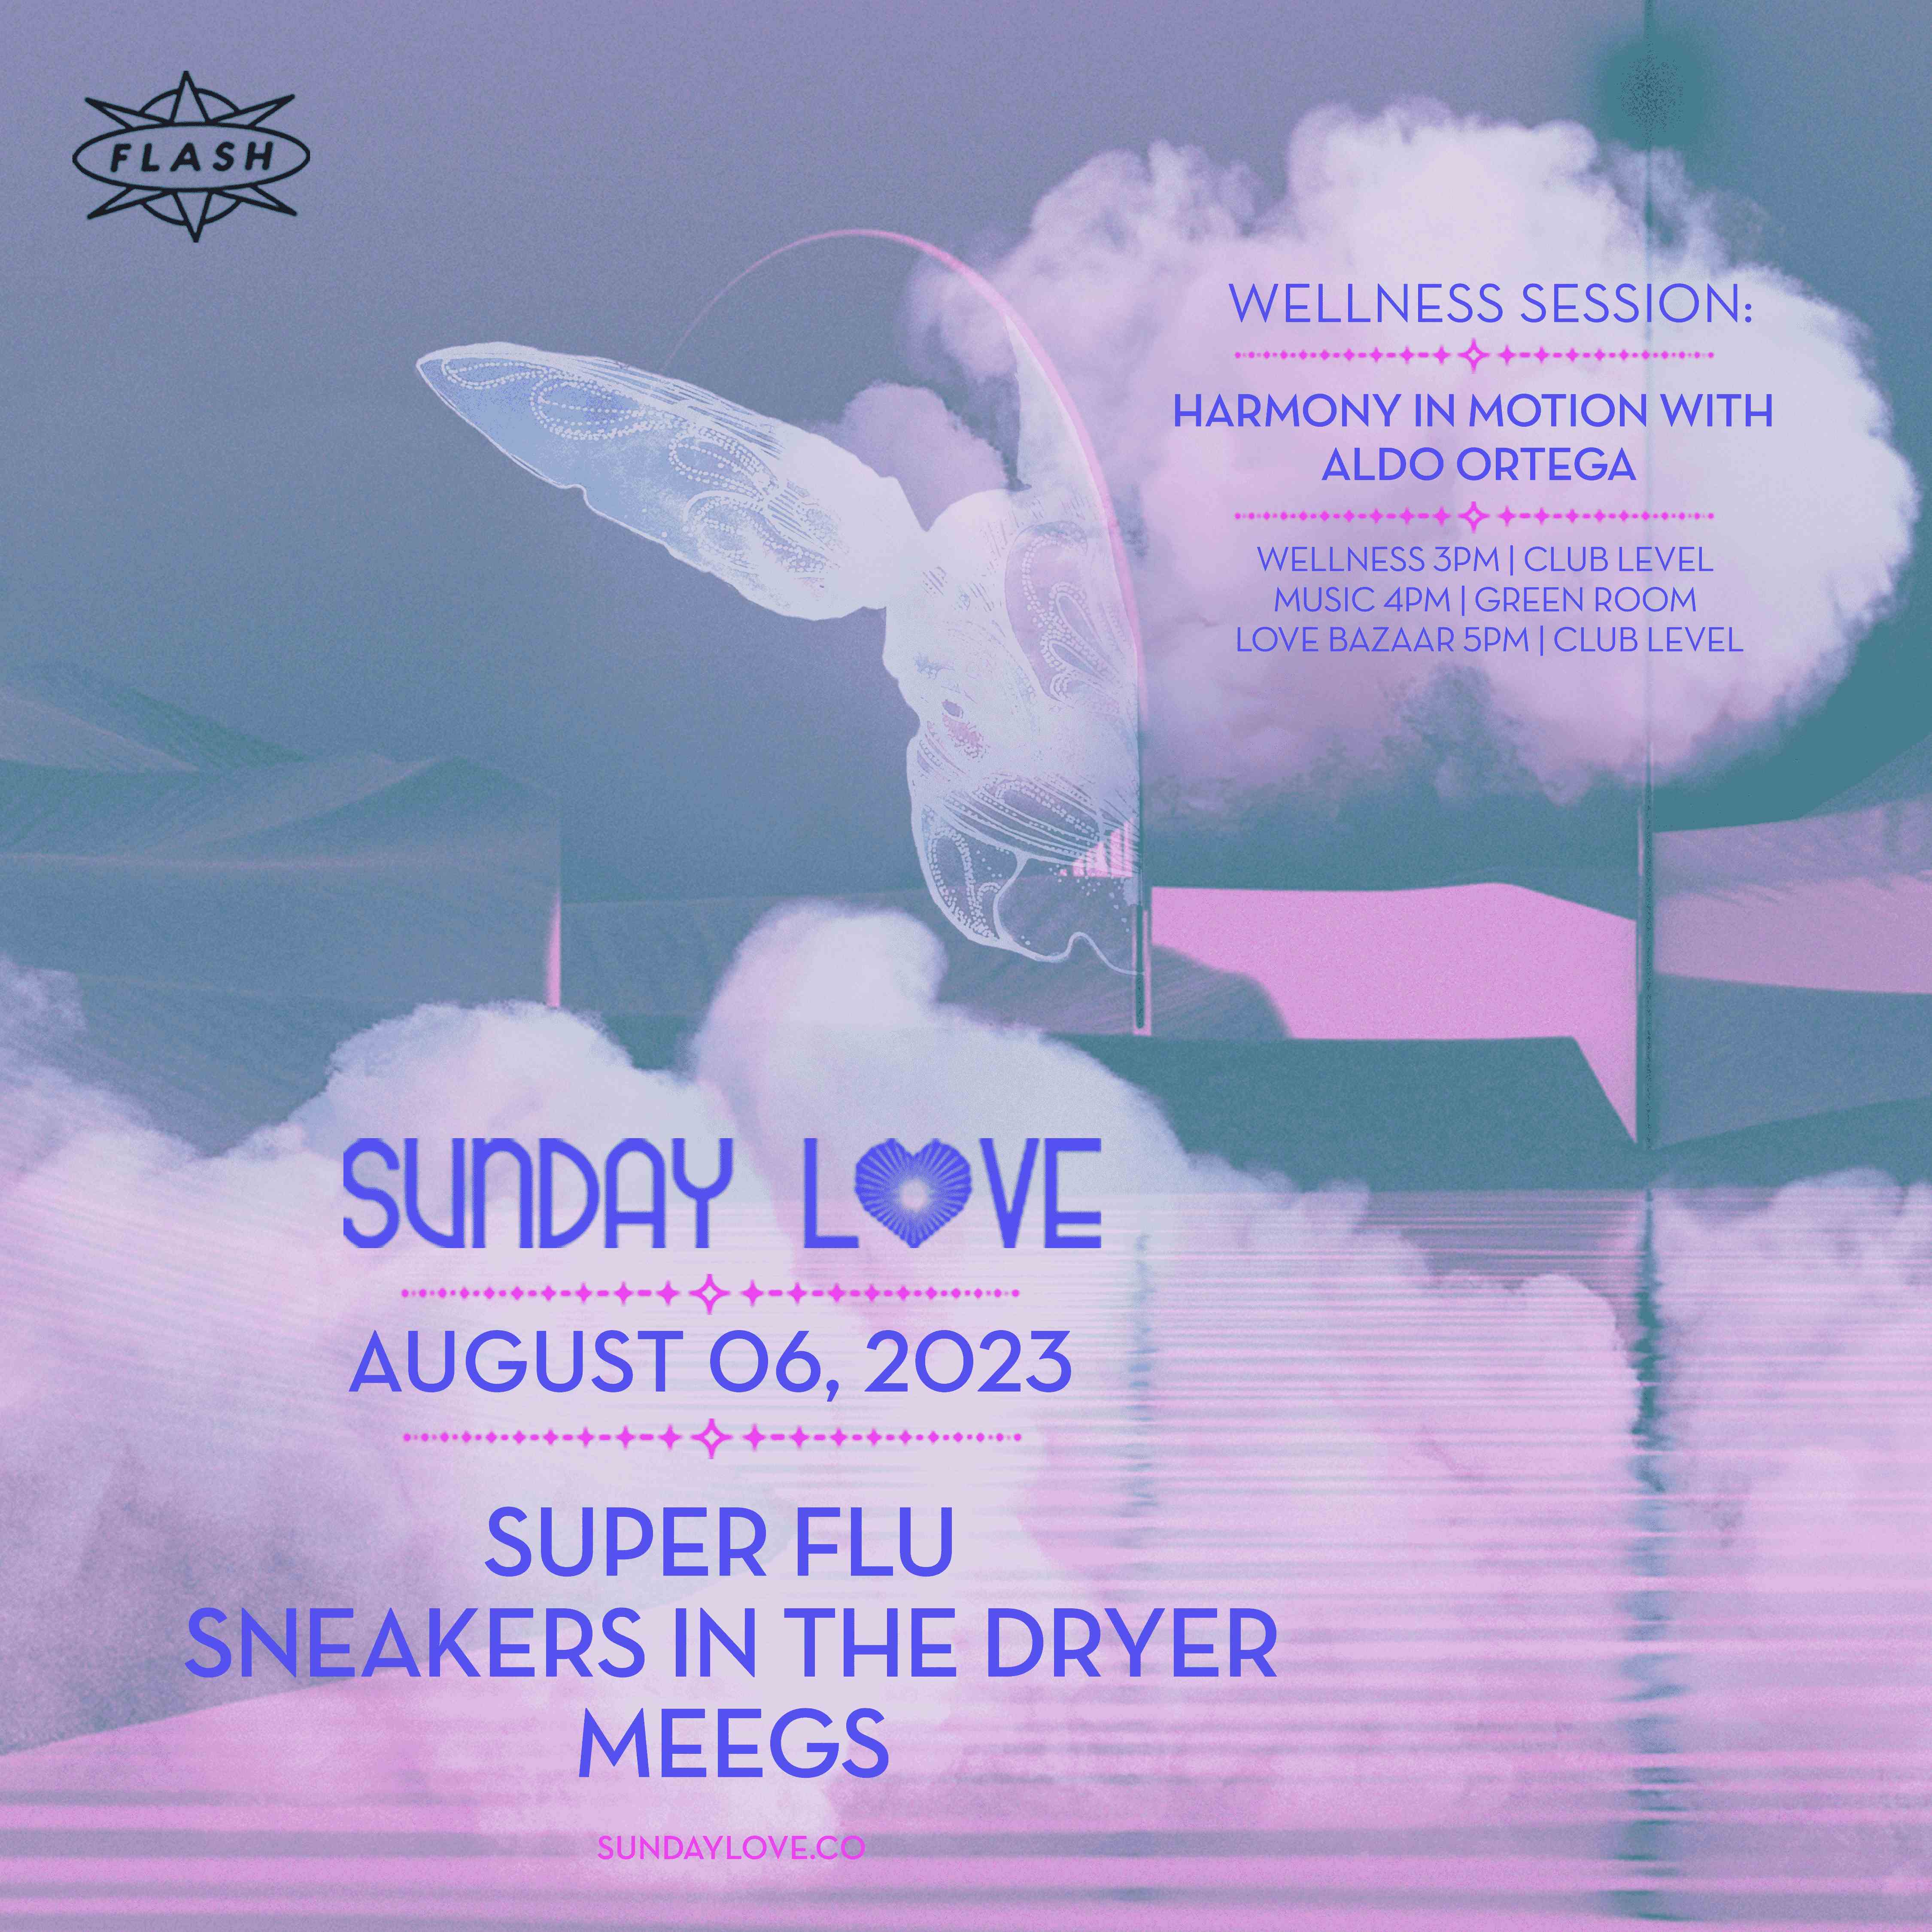 Sunday Love: Super Flu - Sneakers In The Dryer - MEEGS event flyer